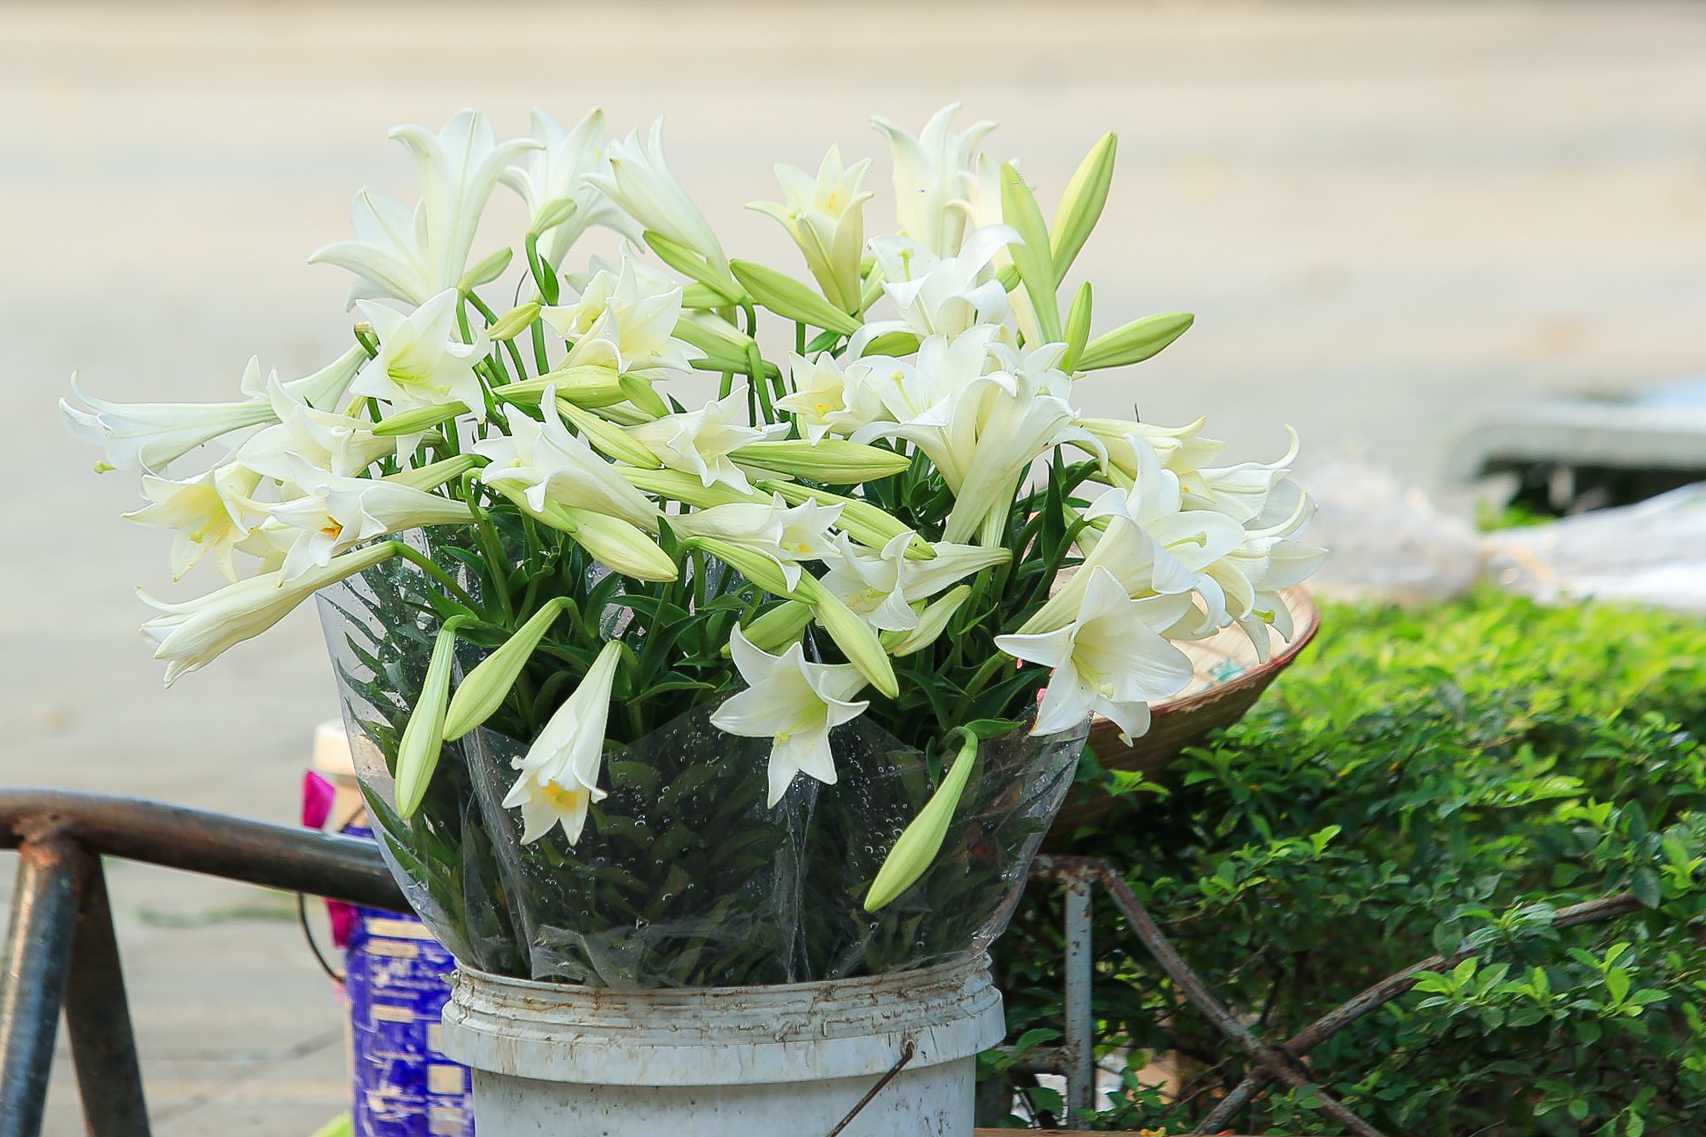 Hoa loa kèn có ý nghĩa gì Cách trồng và chăm sóc giúp hoa nở đẹp